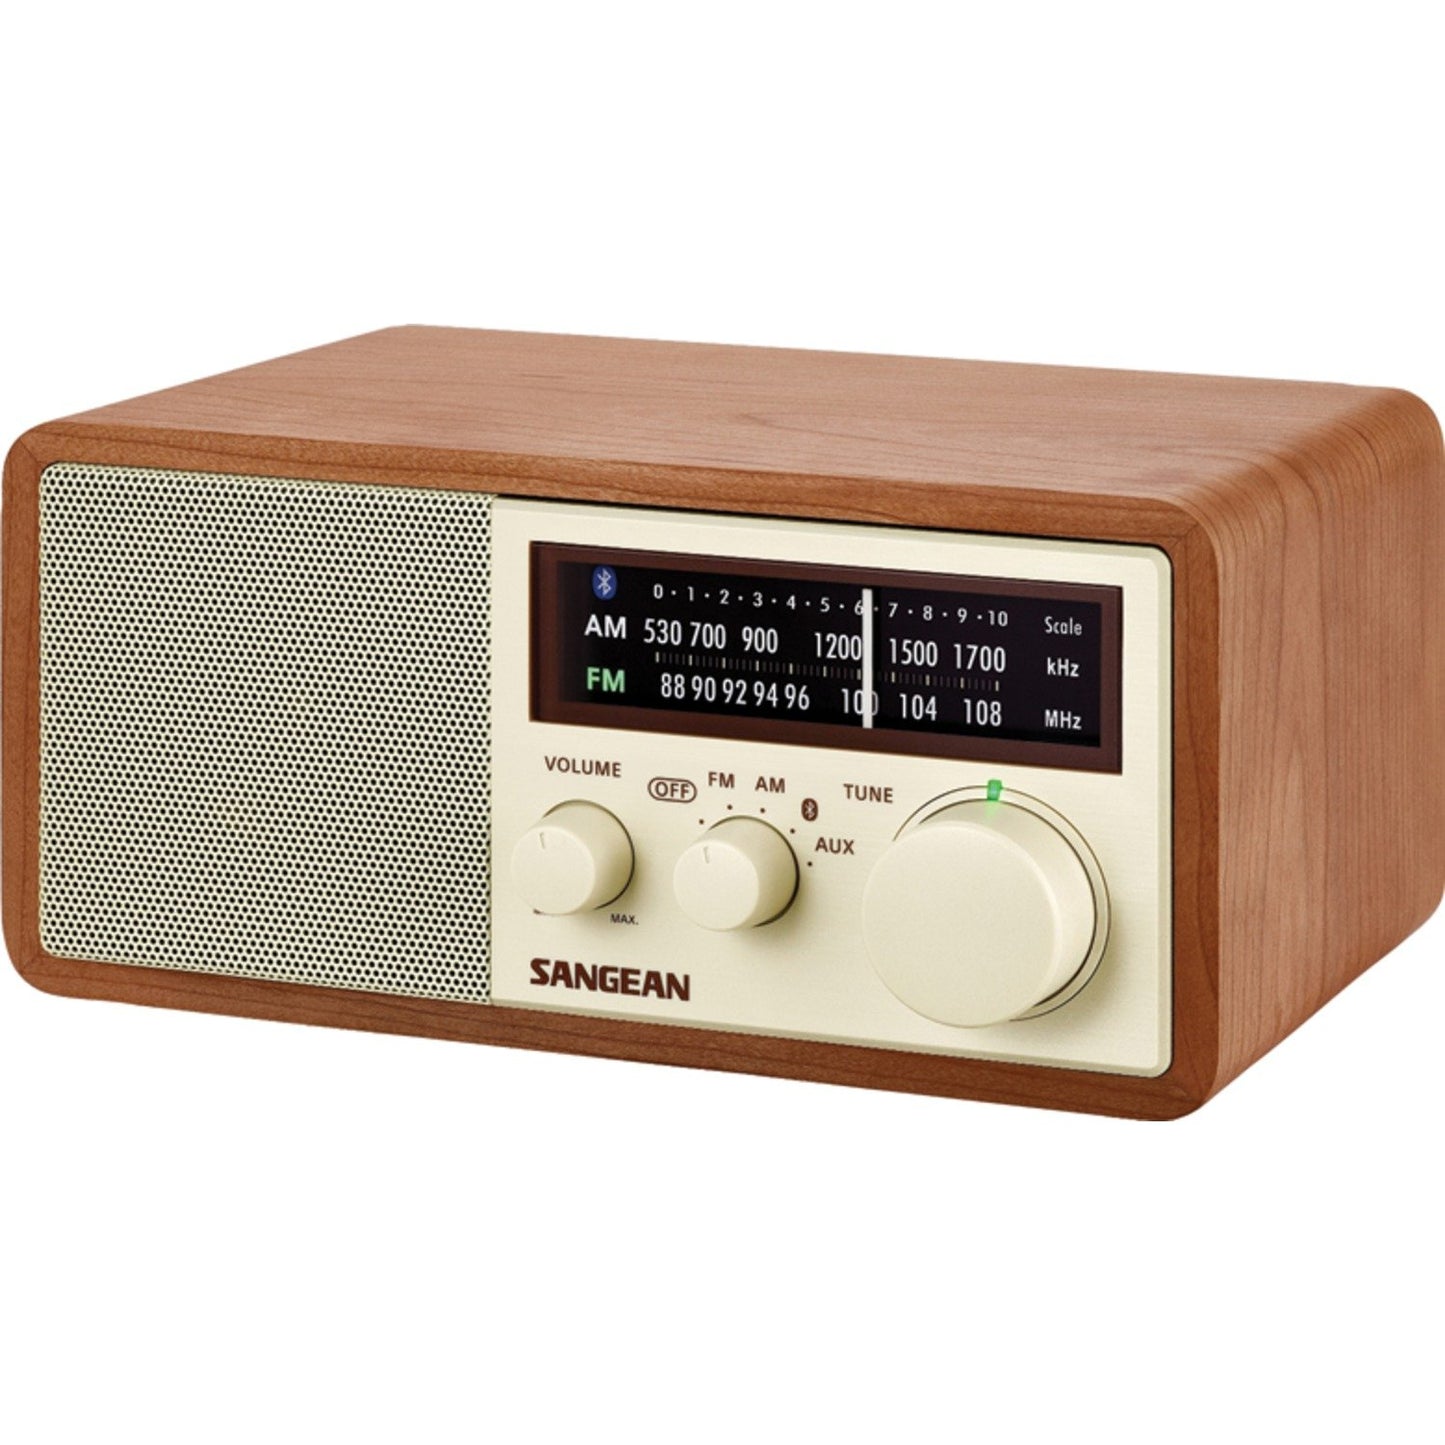 SANGEAN SNGWR16 AM/FM Bluetooth Wooden Cabinet Radio